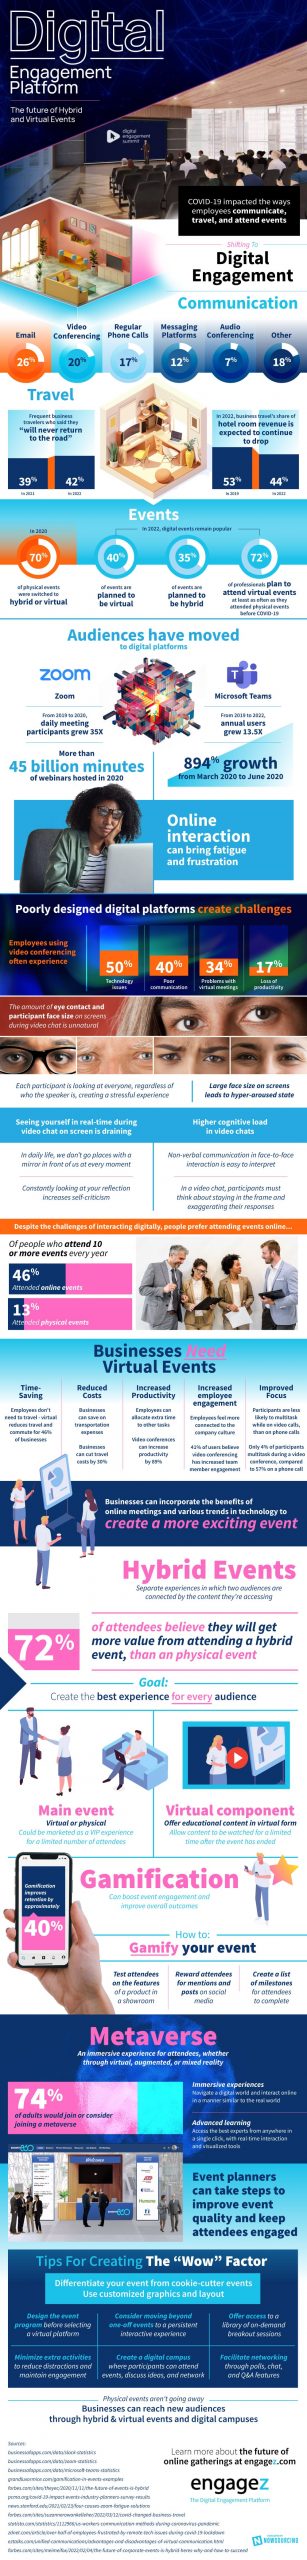 digital engagement platform hybrid events infographic